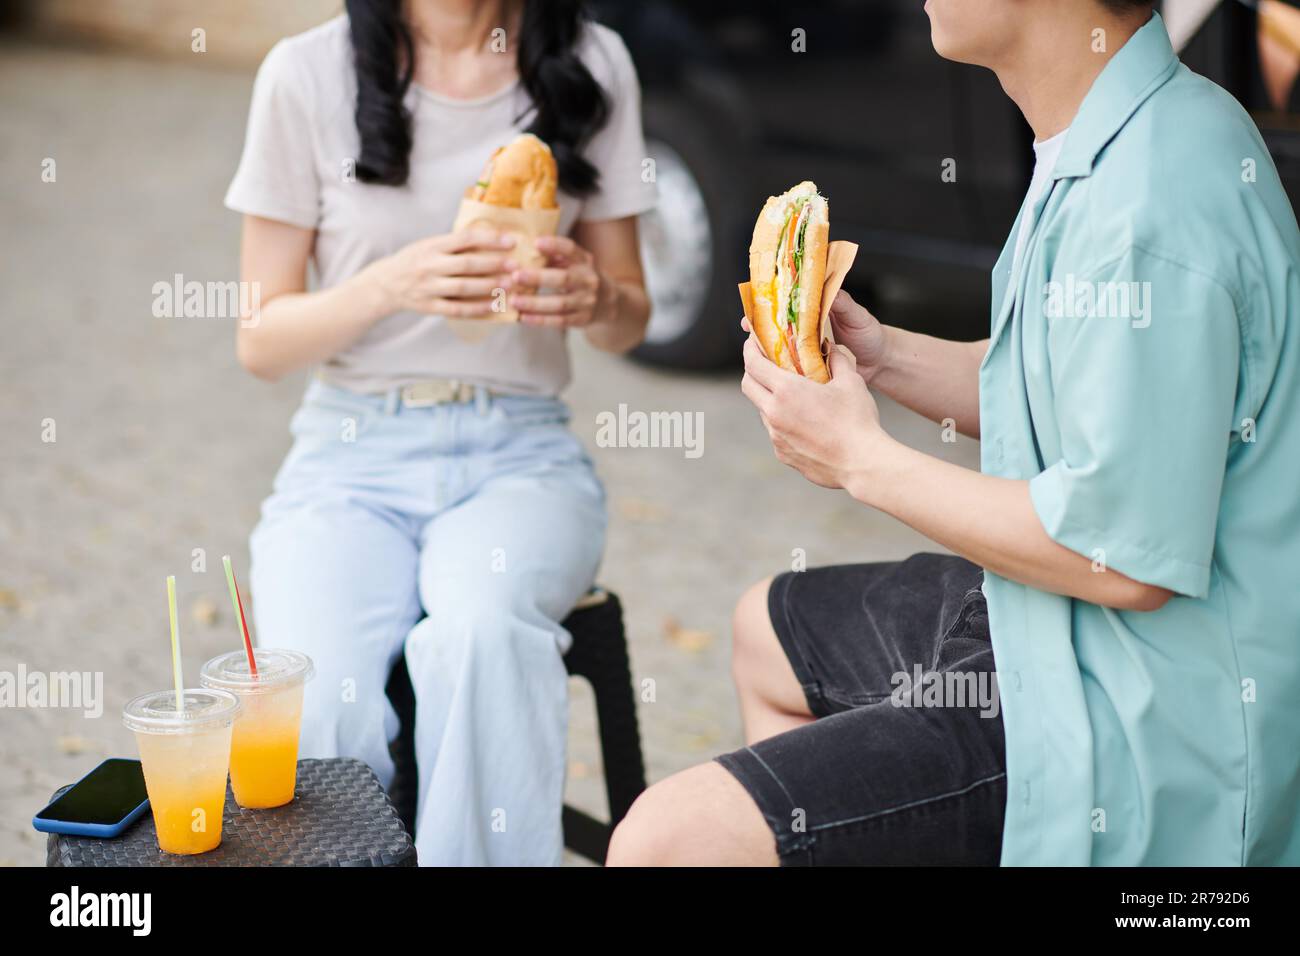 Gekürzte Aufnahme eines jungen Mannes in Freizeitkleidung, der einen appetitlichen Hotdog hat, während er vor seiner Freundin sitzt und einen kleinen Tisch mit zwei Orangensaften hat Stockfoto